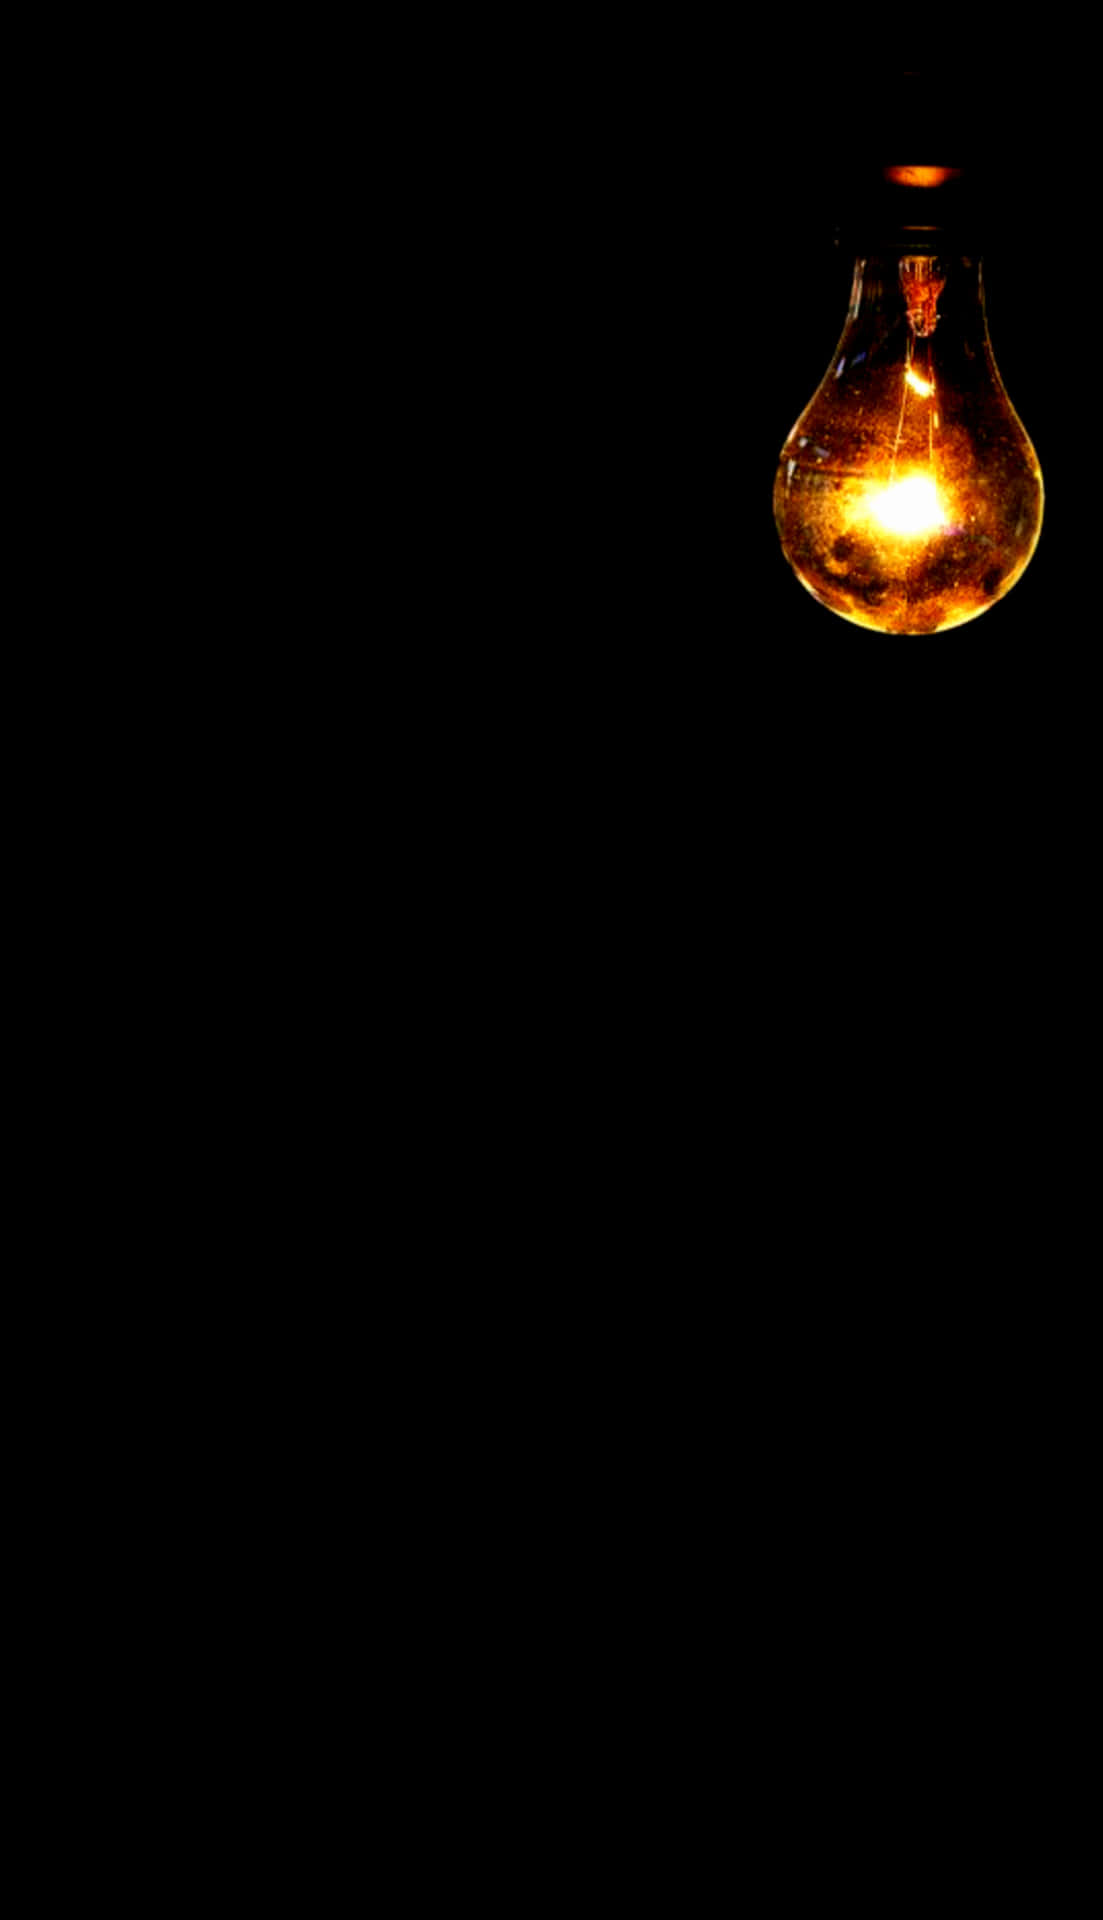 Eineglühbirne Leuchtet In Der Dunkelheit. Wallpaper